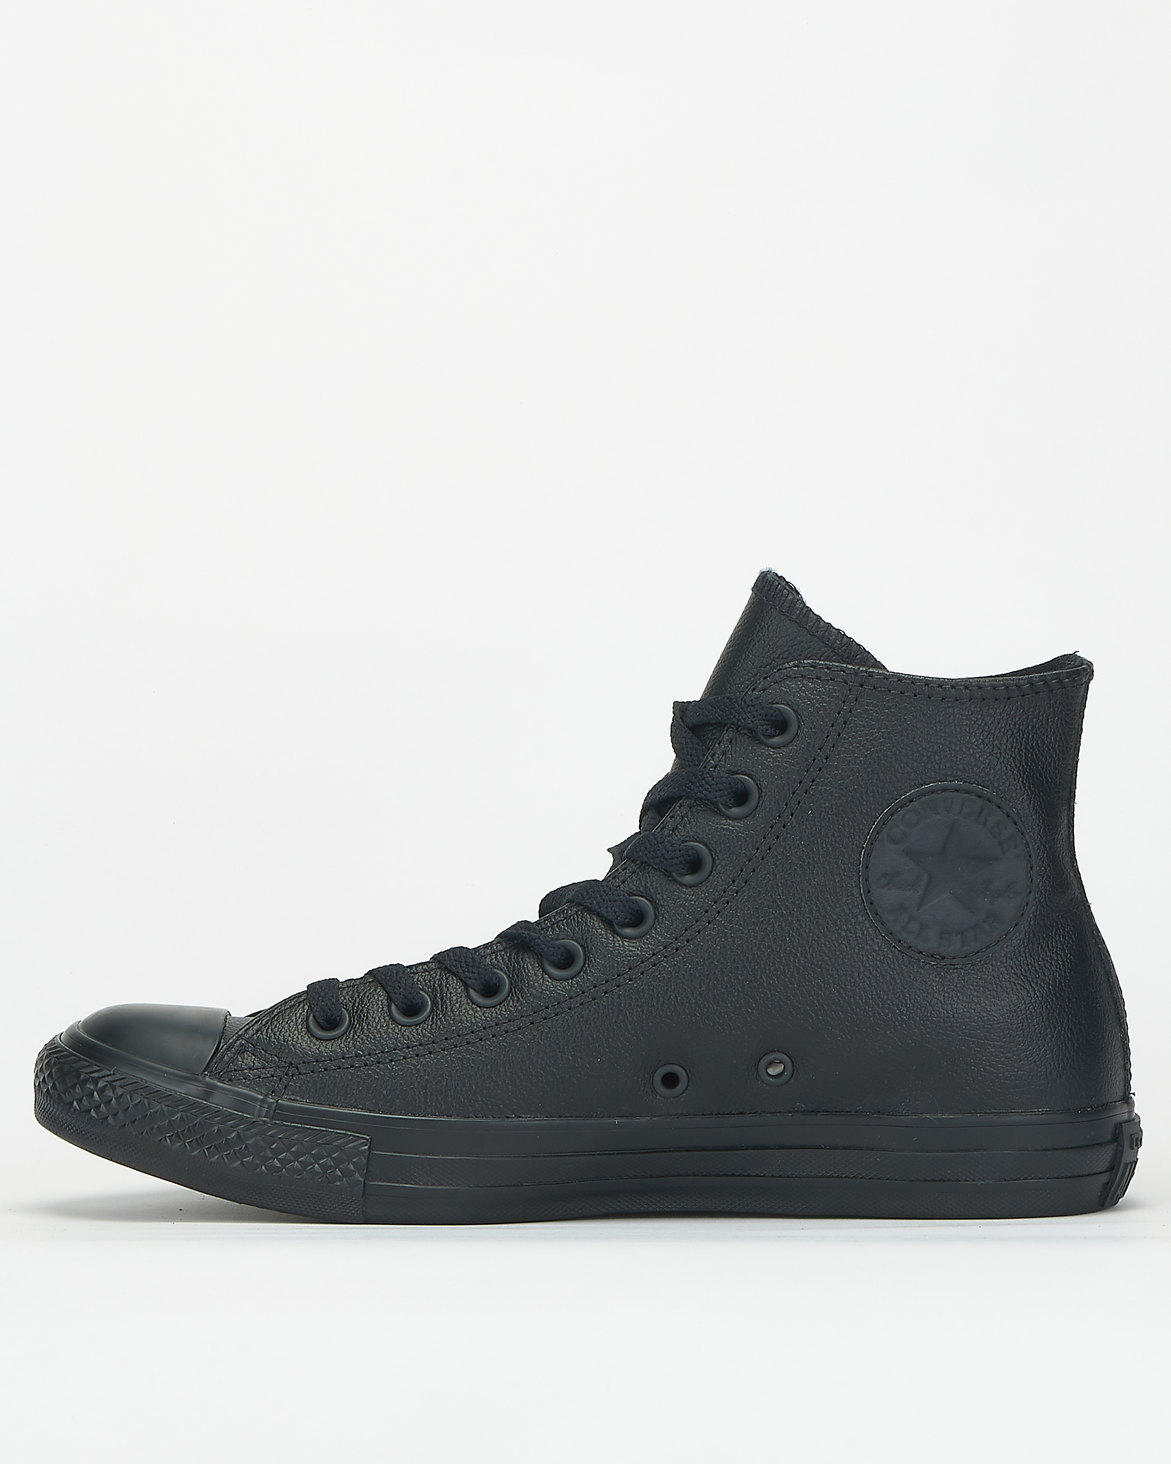 Converse All Star Leather Sneakers Black Mono | Zando